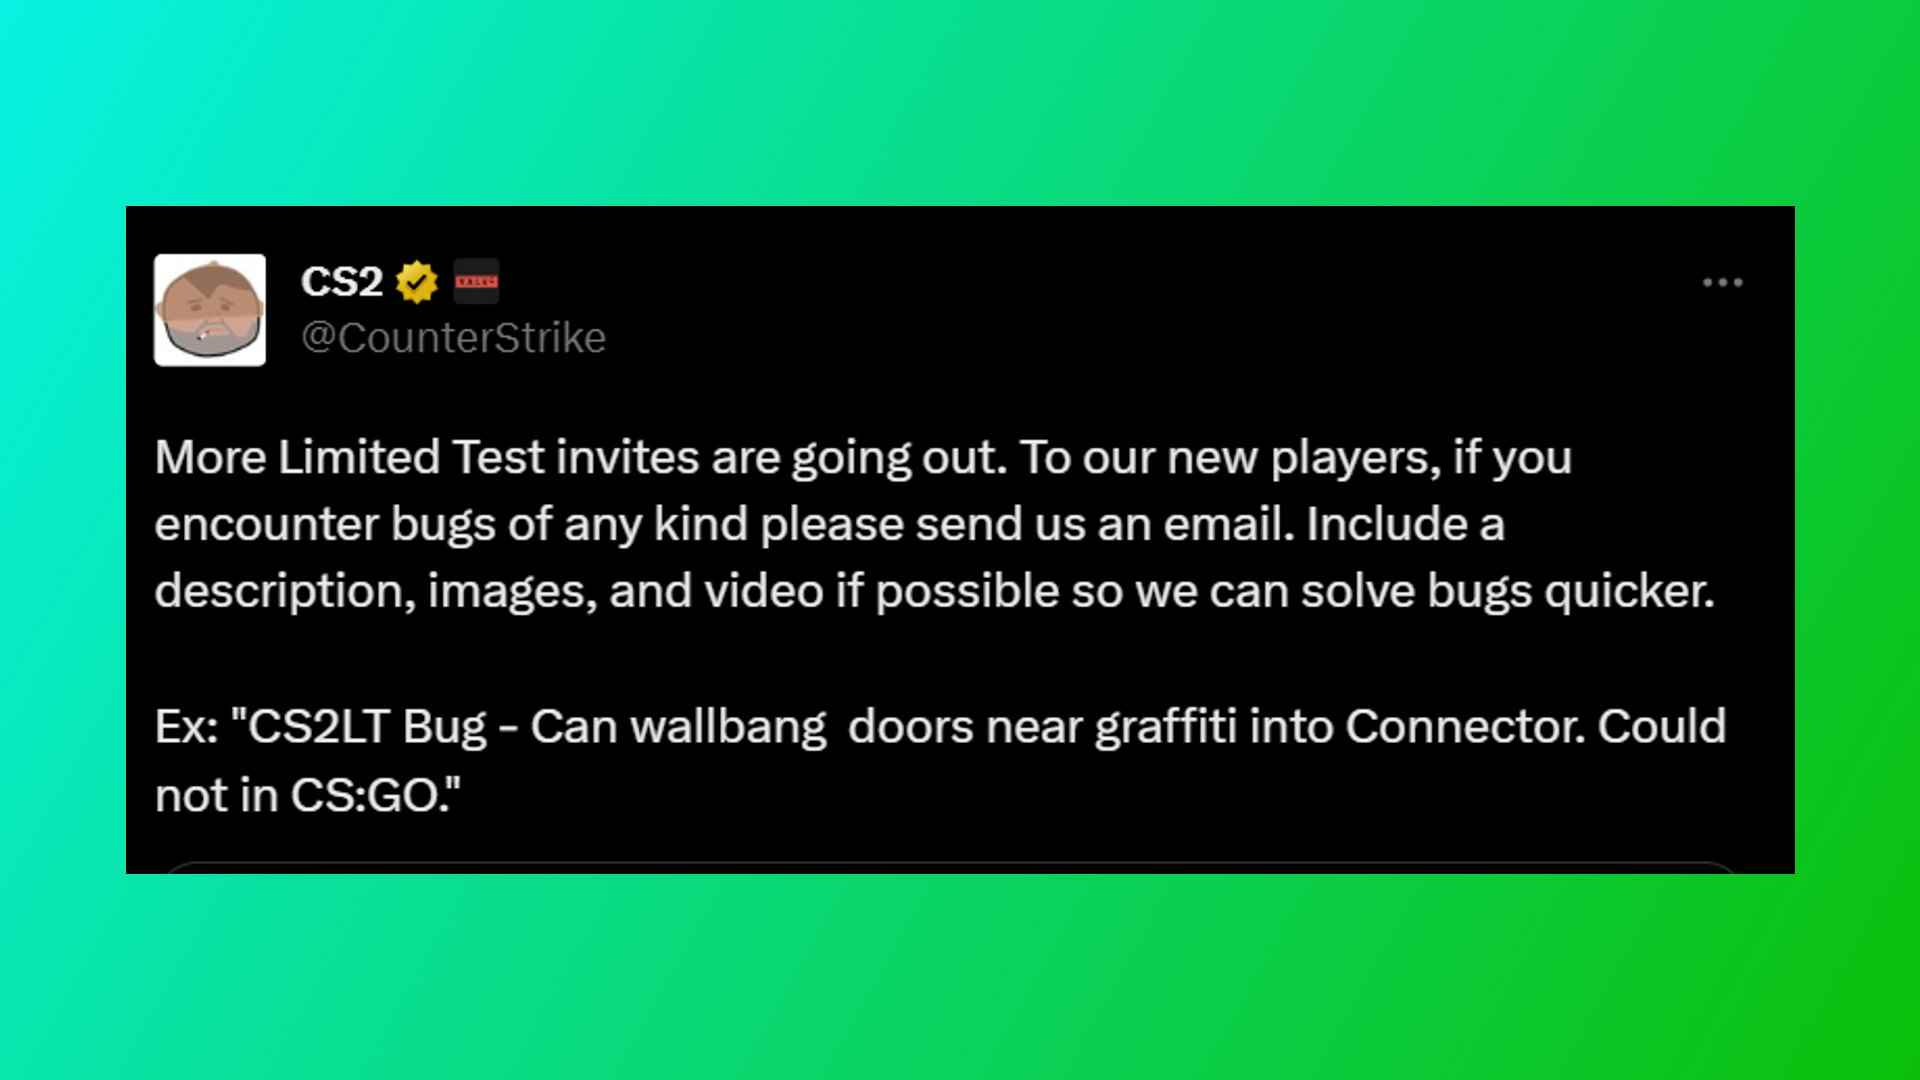 Counter-Strike 2 davetleri: Valve'den FPS oyunu Counter-Strike 2'ye daha fazla davet reklamı yapan bir tweet